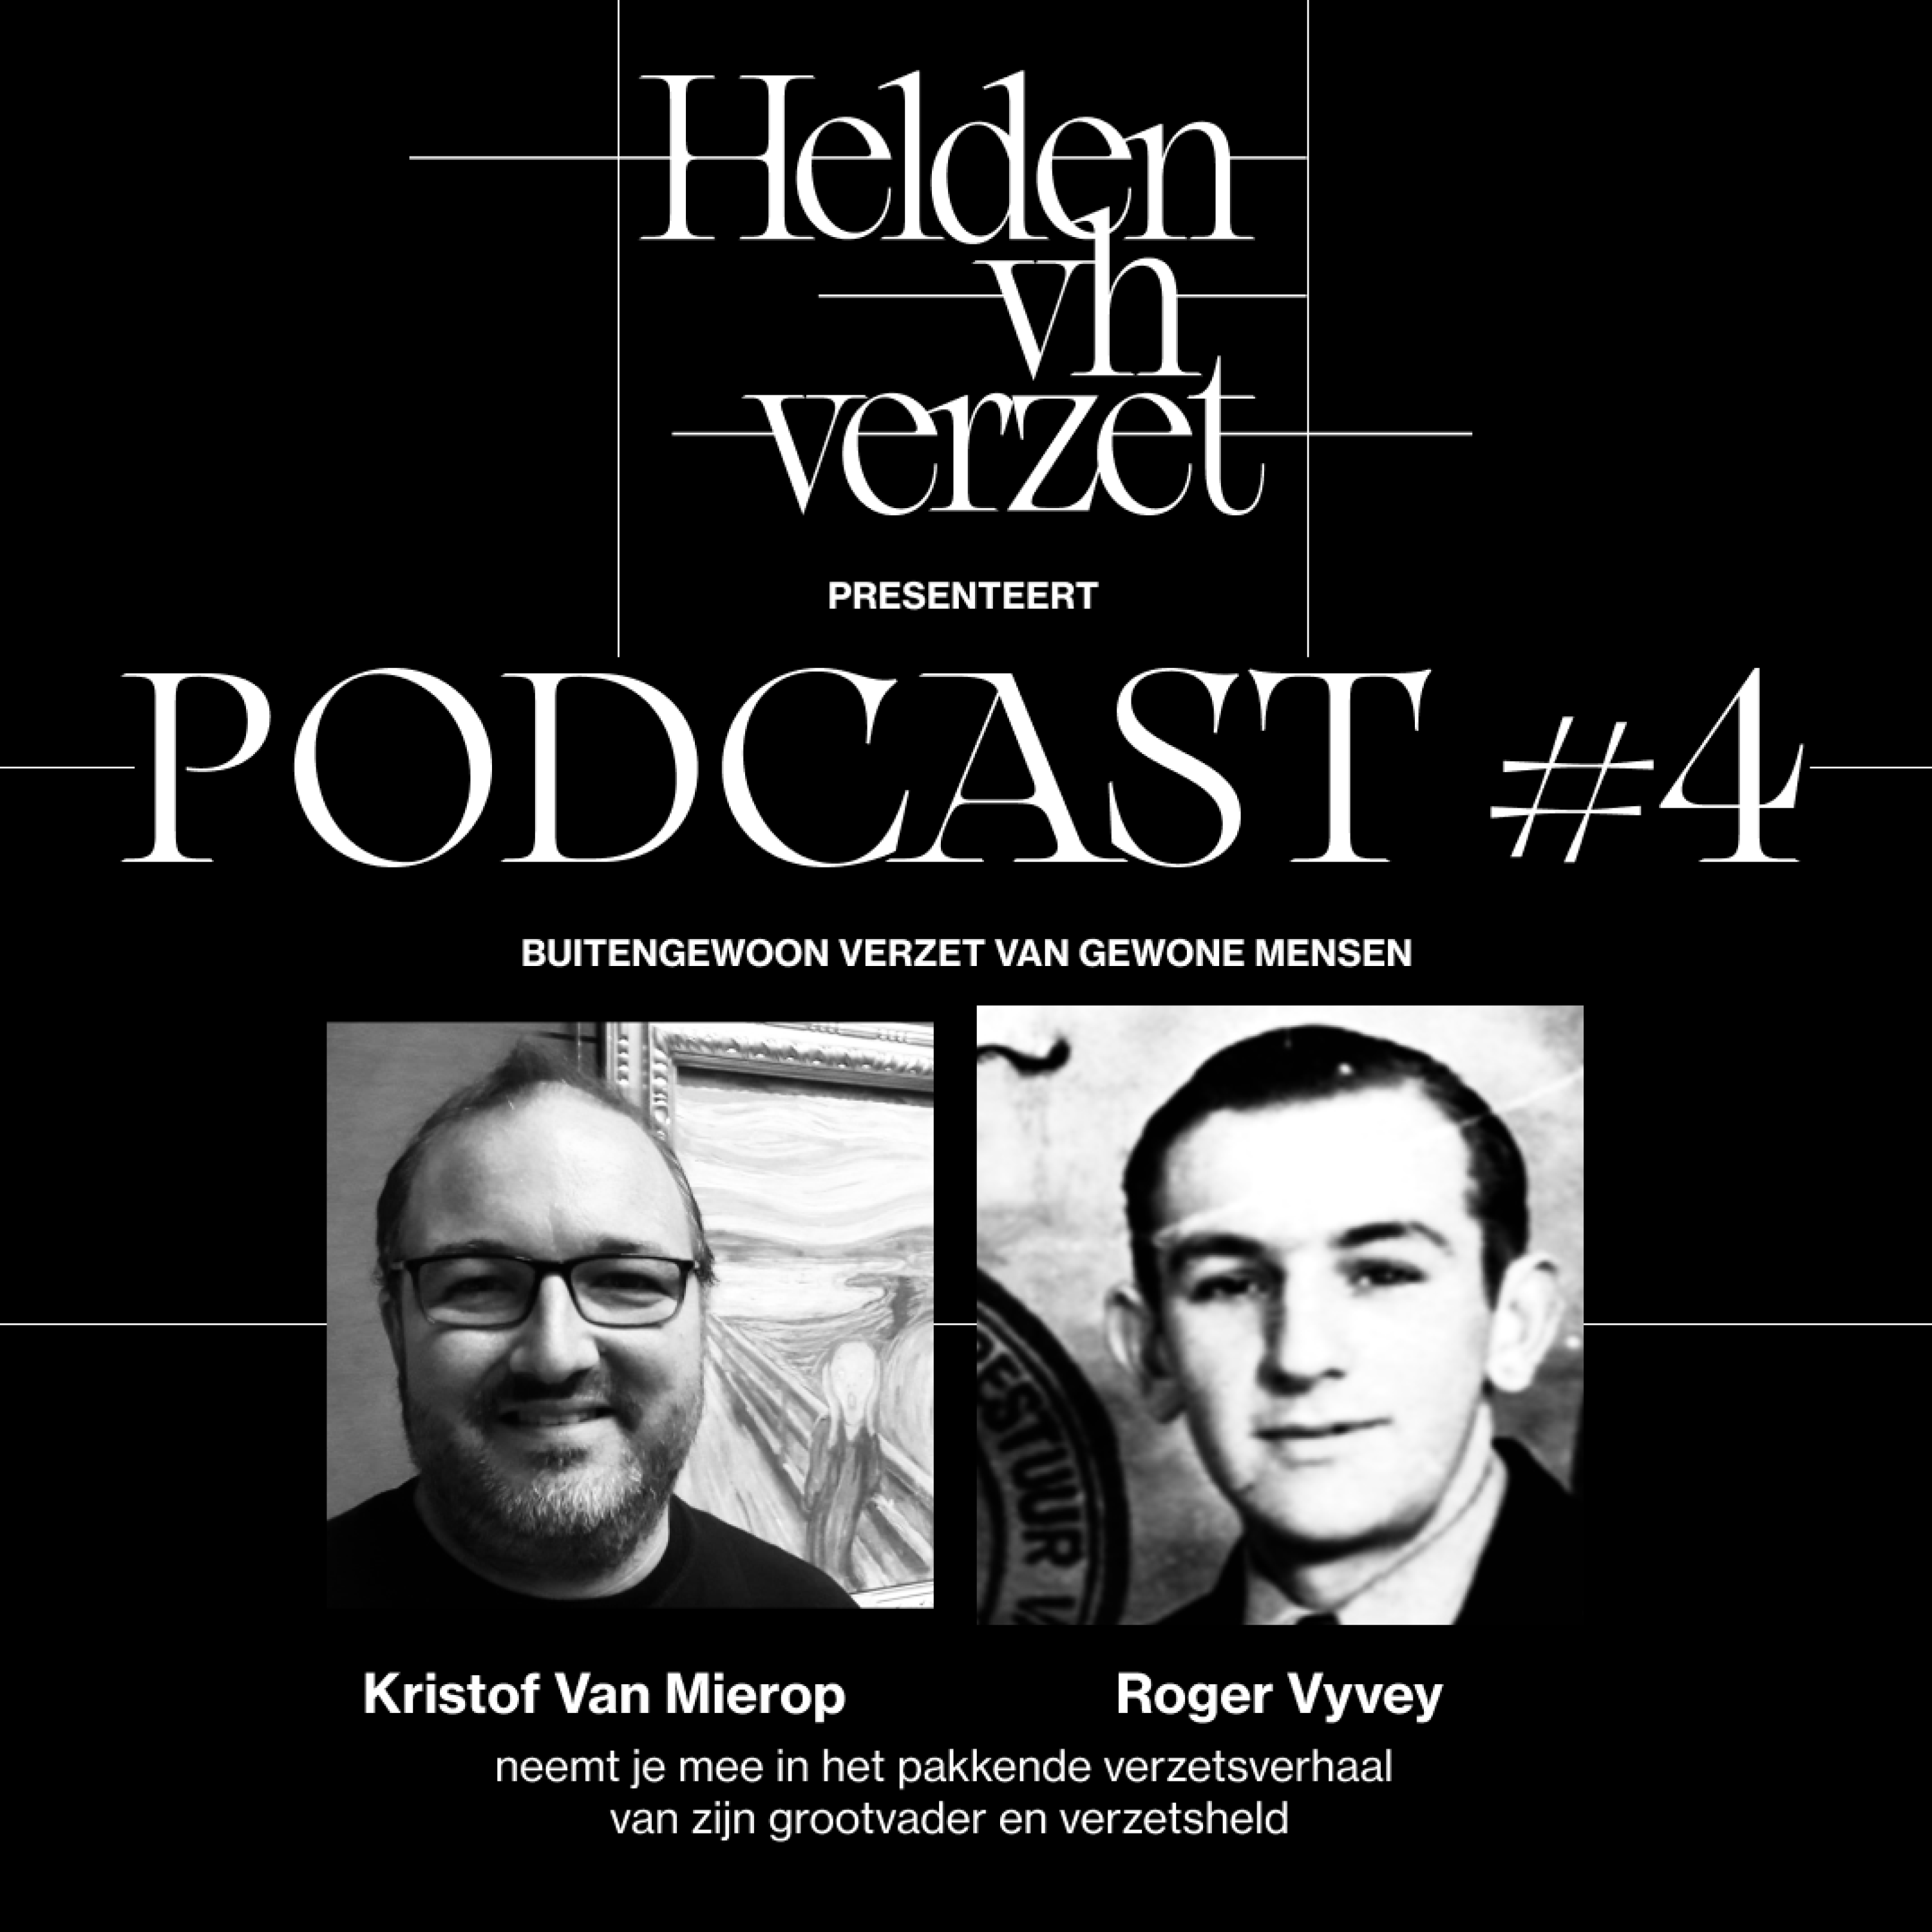 #4 “Mijn grootvader was niet langer Roger Vyvey, maar nummer 44444”. Kristof Van Mierop vertelt het verzetsverhaal van zijn grootvader Roger Vyvey.